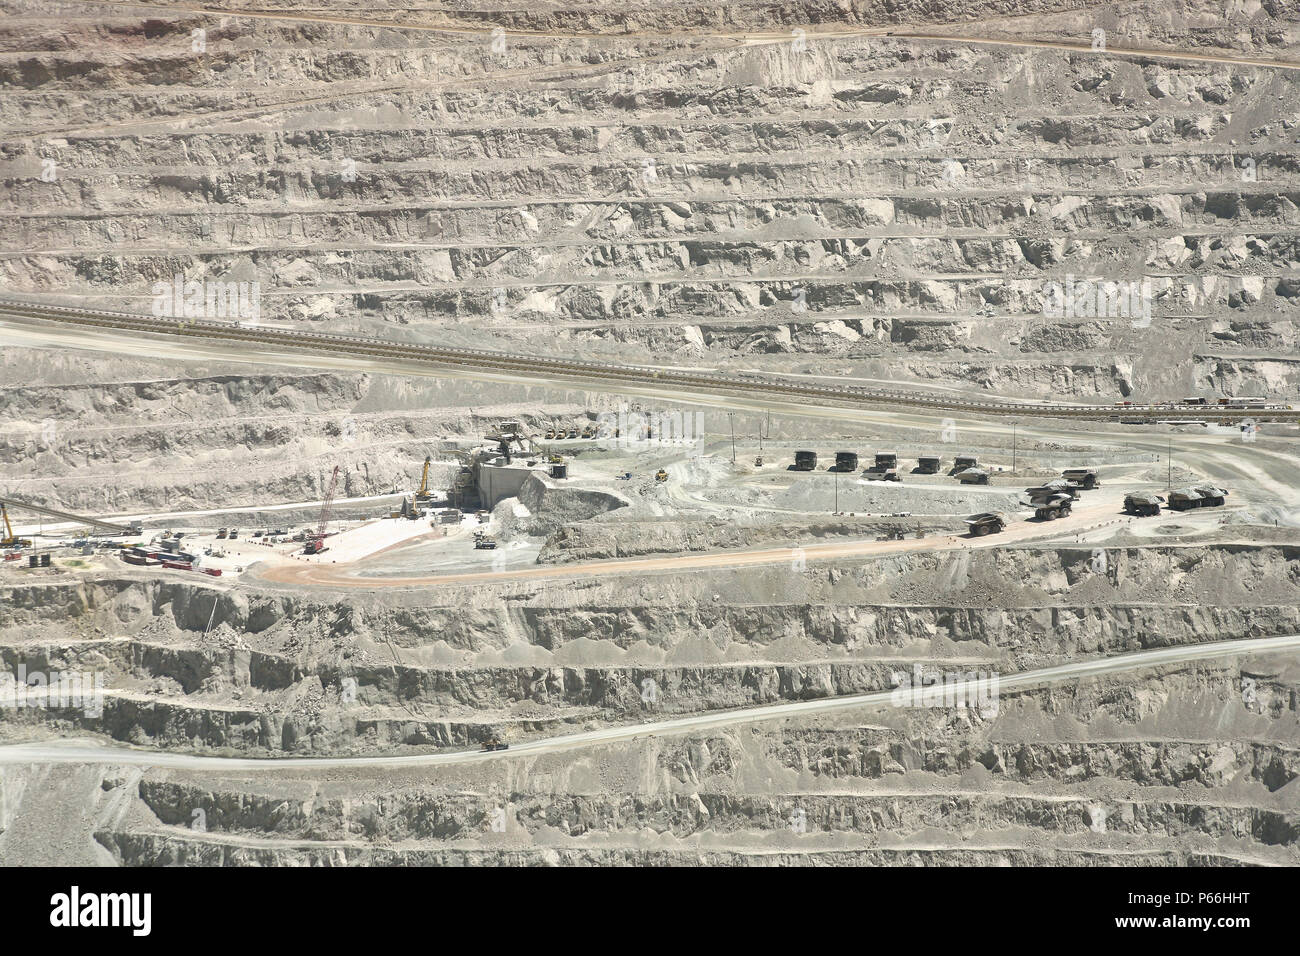 Detail of copper open cast mine Escondida, Chile Stock Photo